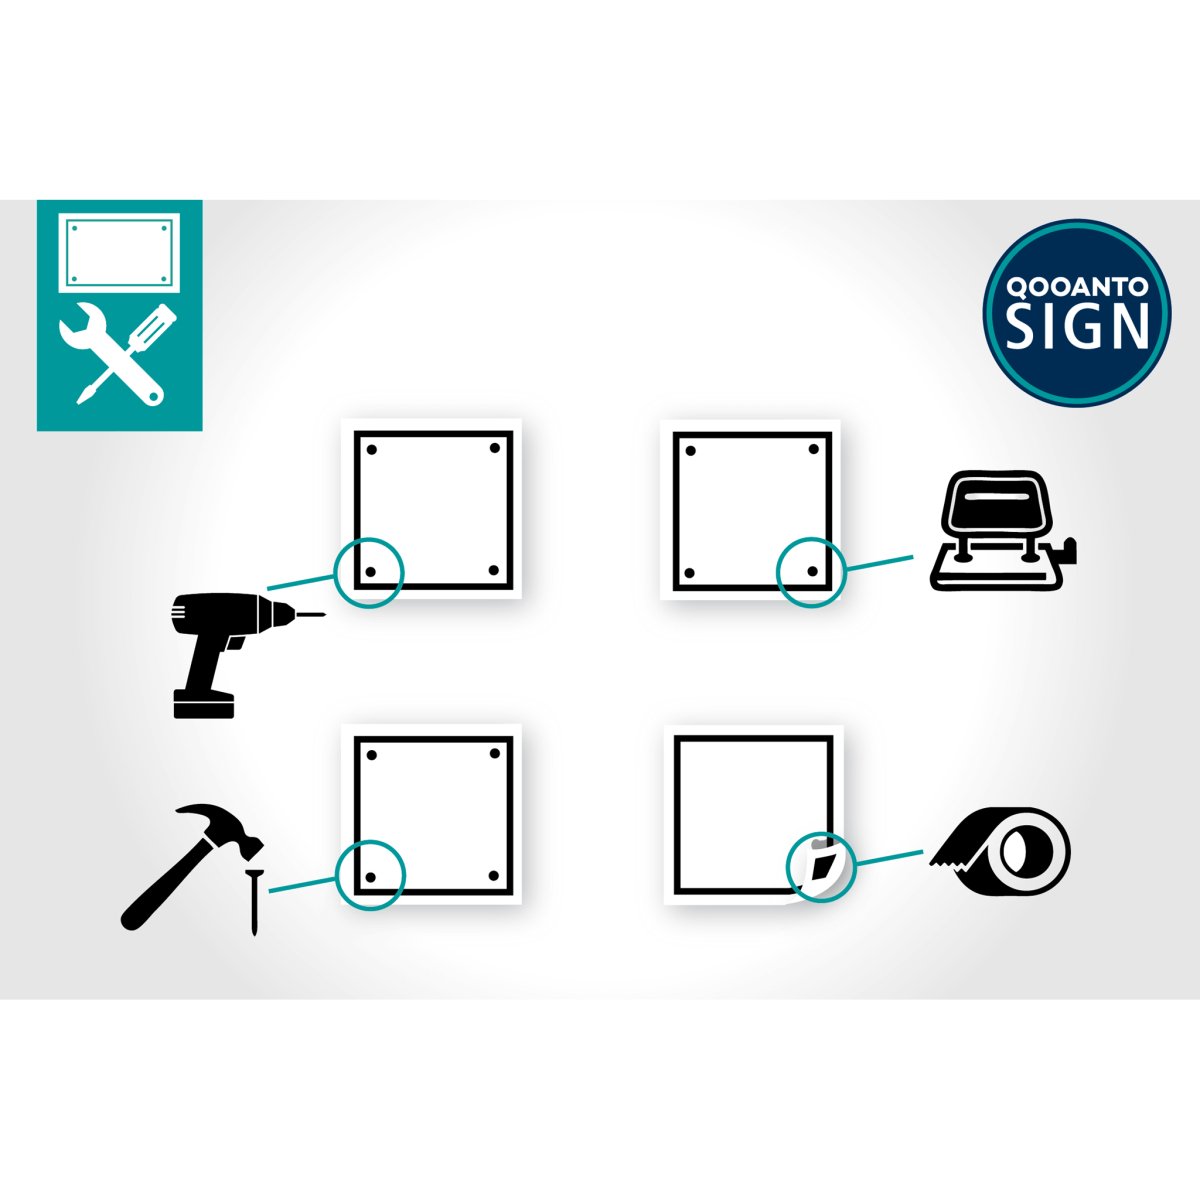 Verbot Für Motorwagen Verkehrsschild oder Aufkleber aus Alu-Verbund oder Selbstklebefolie mit UV-Schutz - QOOANTO-SIGN